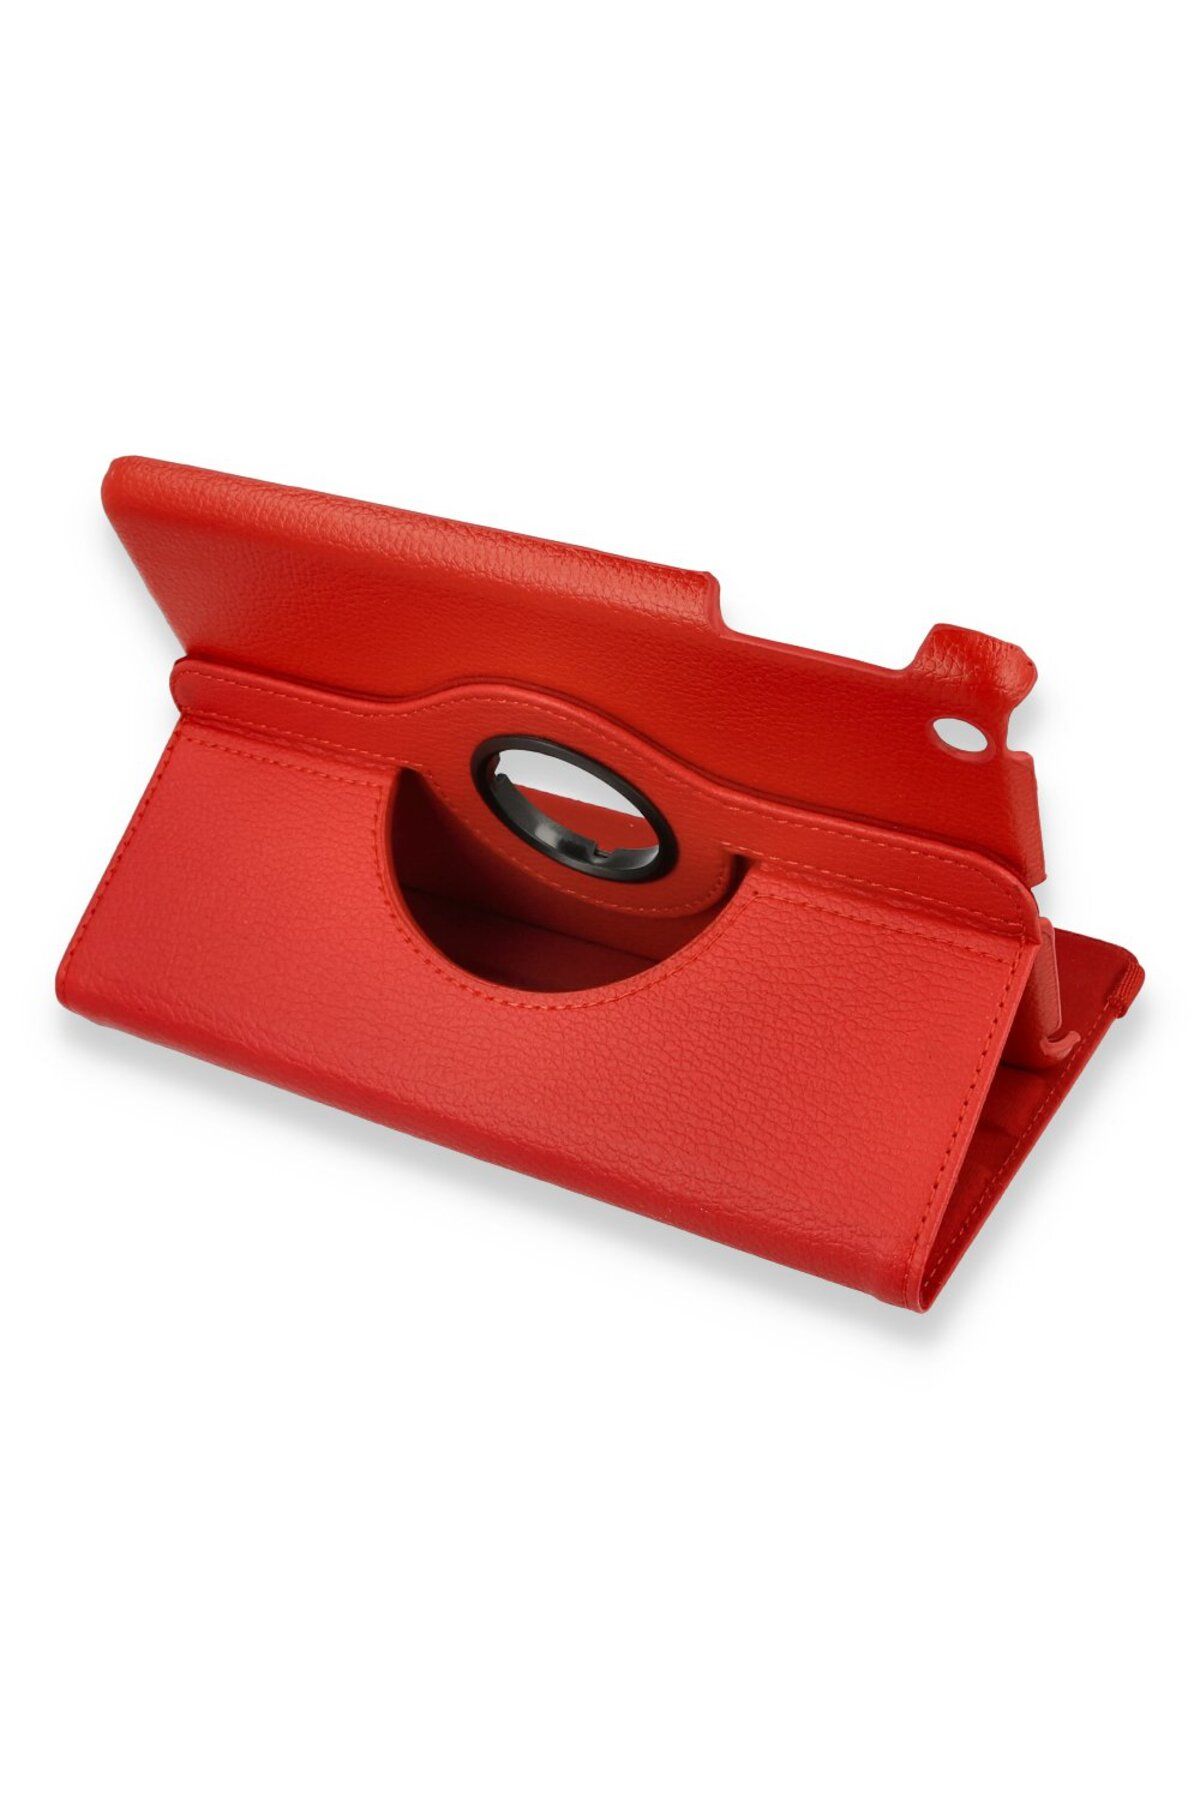 Lisinya İpad Mini 3 Kılıf 360 Tablet Deri Uyumlu Kılıf - Ürün Rengi : Kırmızı - Lisinya